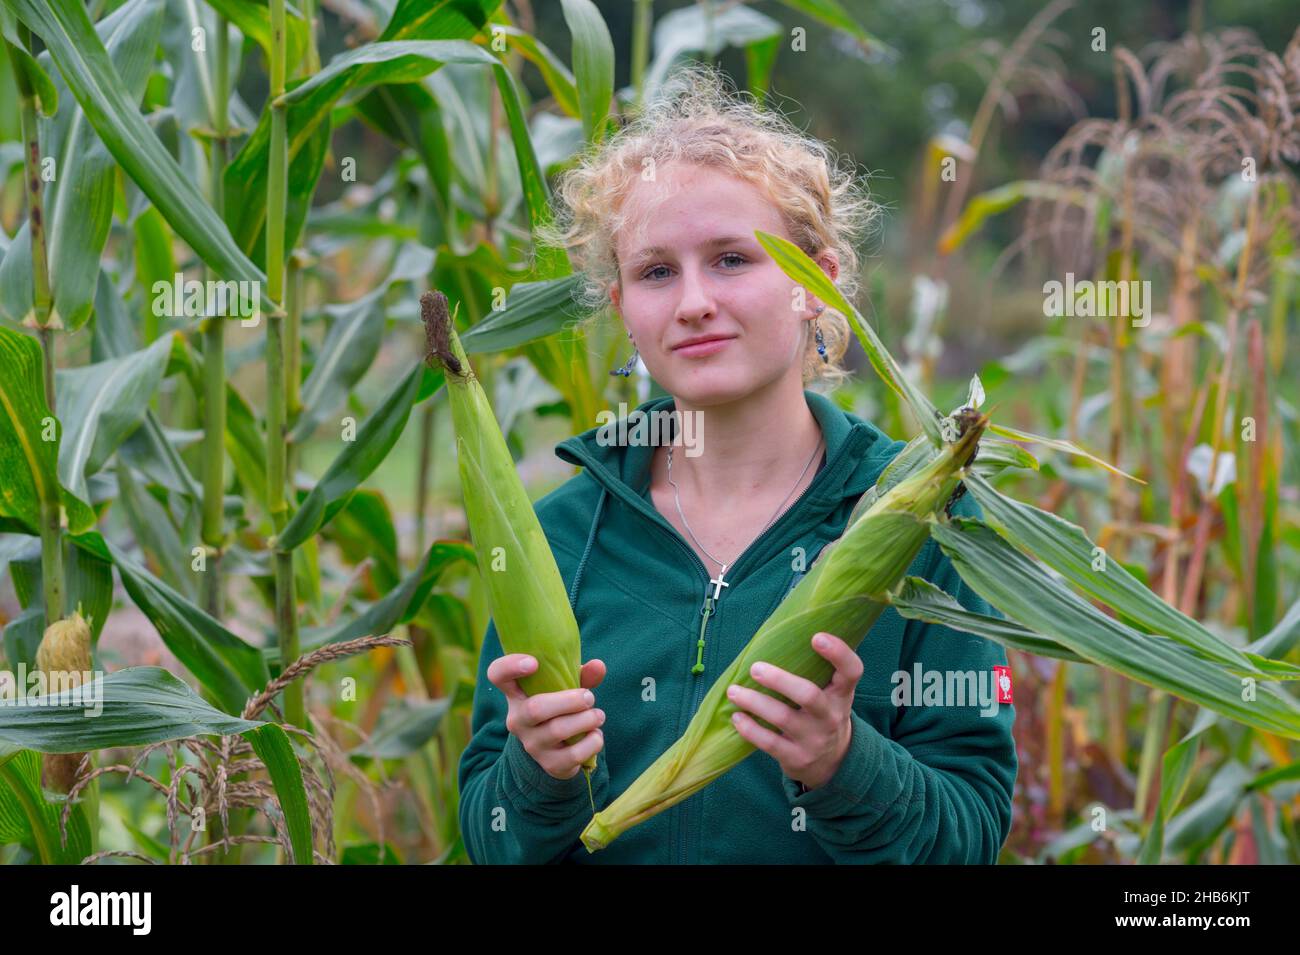 Maíz indio, maíz (Zea mays), joven jardinera en la cosecha de maíz en un huerto , Alemania, Hamburgo, Flottbek Foto de stock